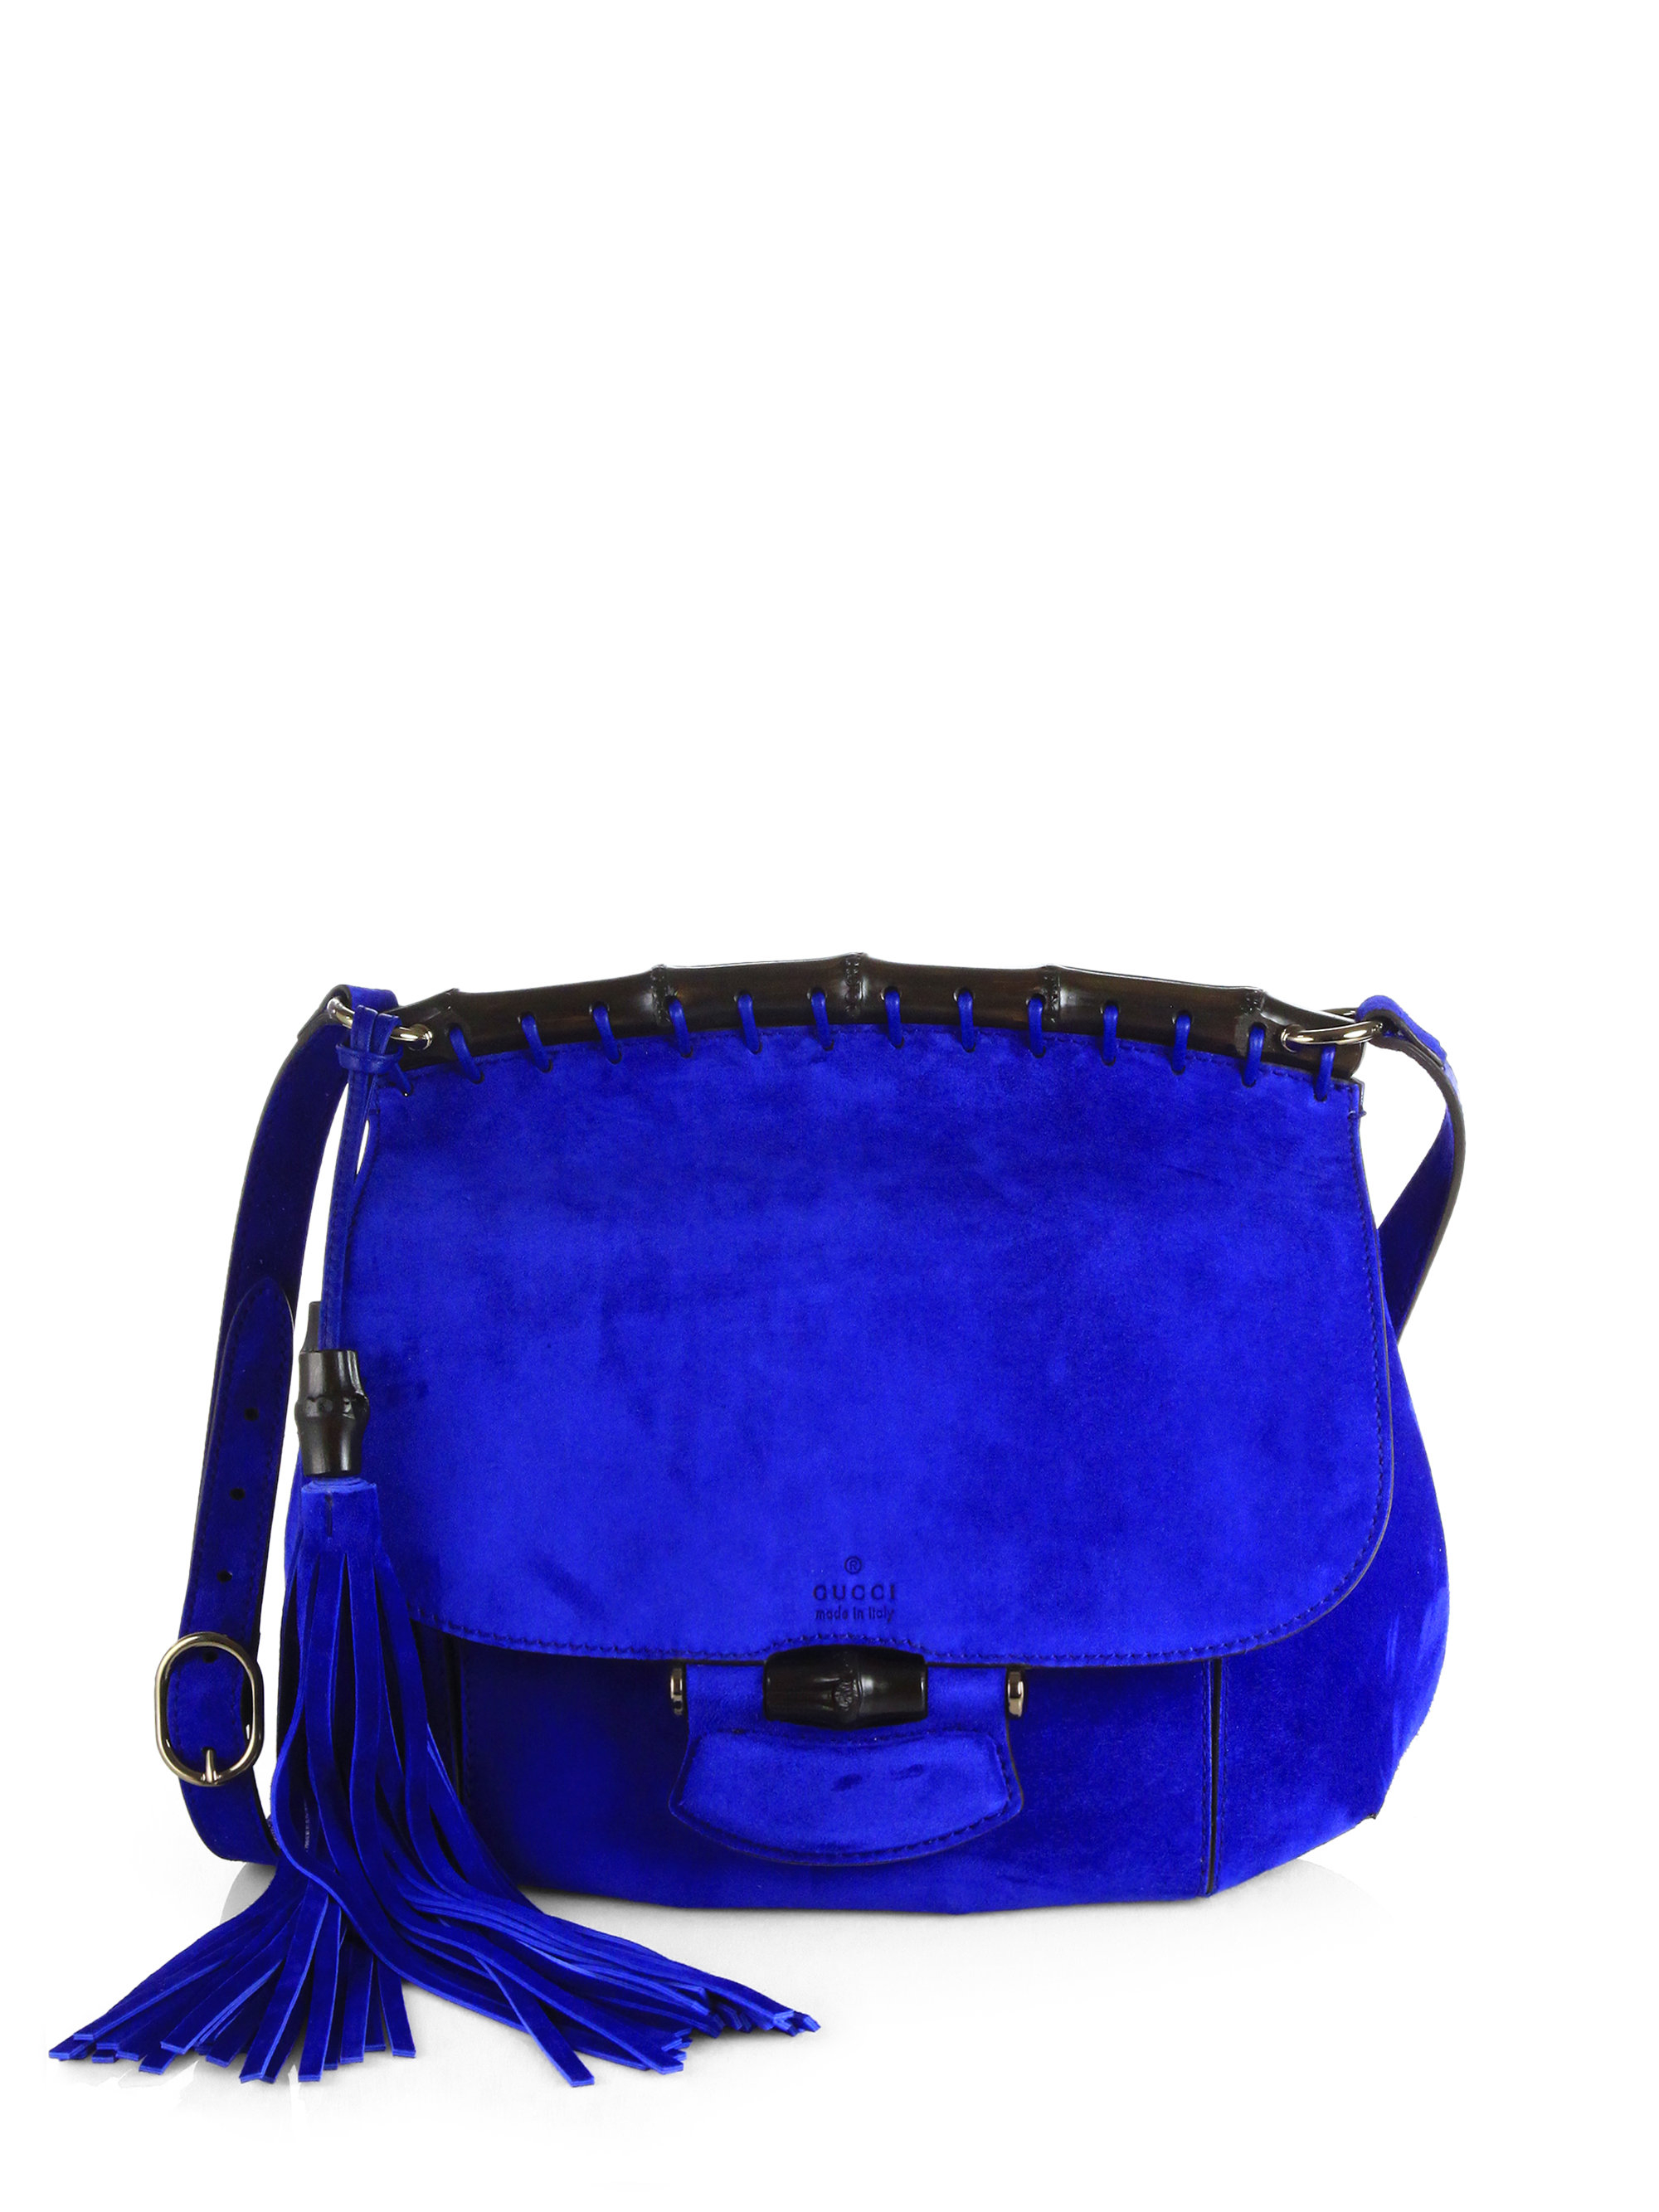 Gucci Nouveau Suede Shoulder Bag in Blue - Lyst